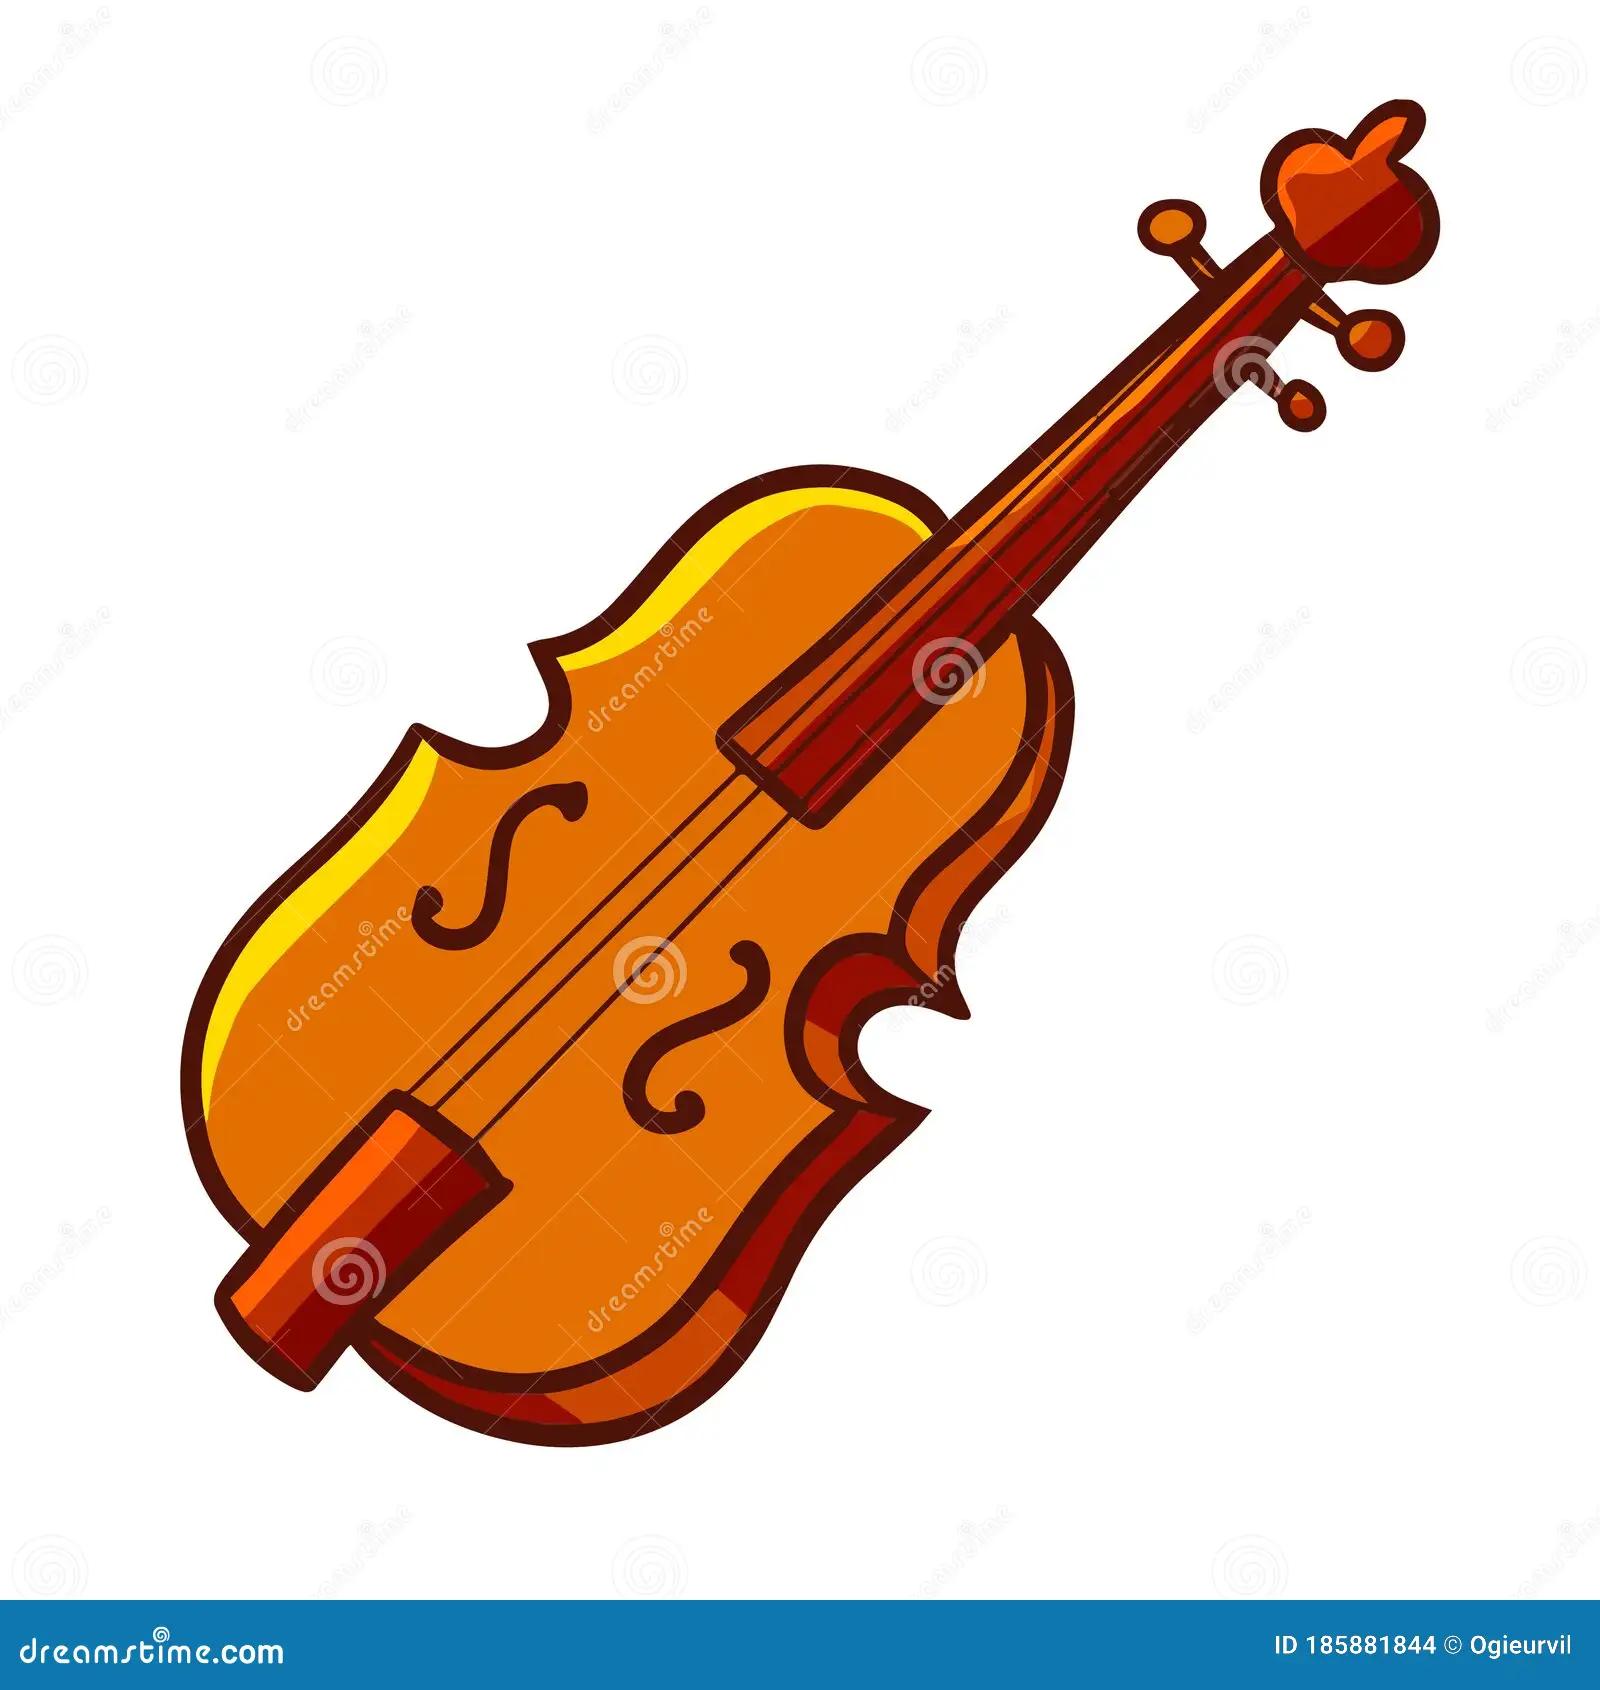 caritaturas violin - Cómo se llama el pajarito de Silvestre